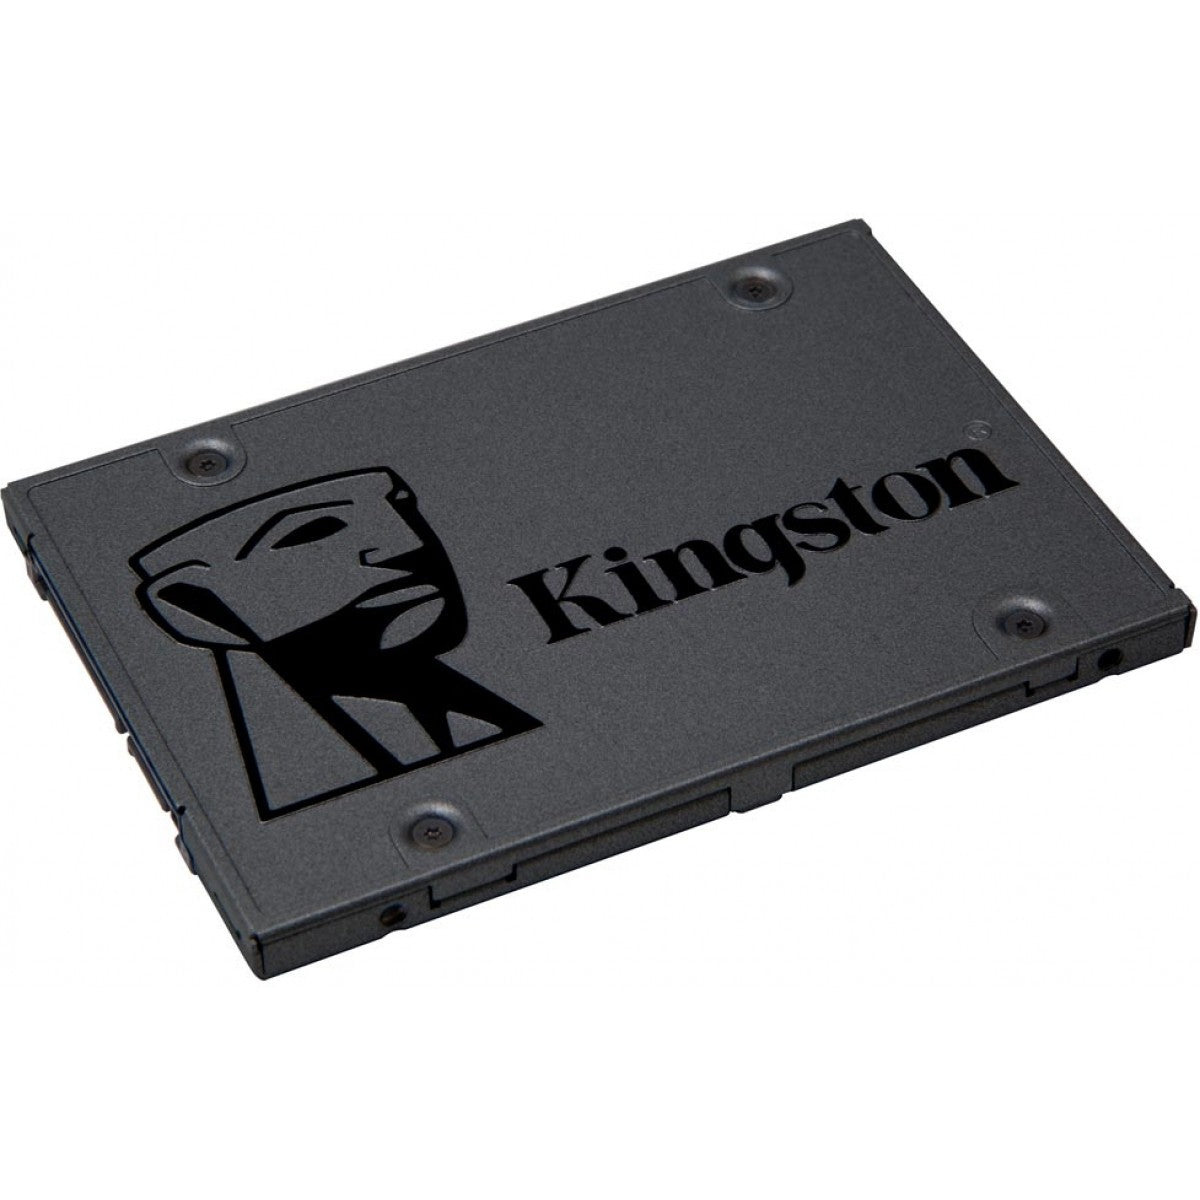 SSD Kingston A400, 480GB, Sata III, Leitura 500MBs Gravação 450MBs, SA400S37/480